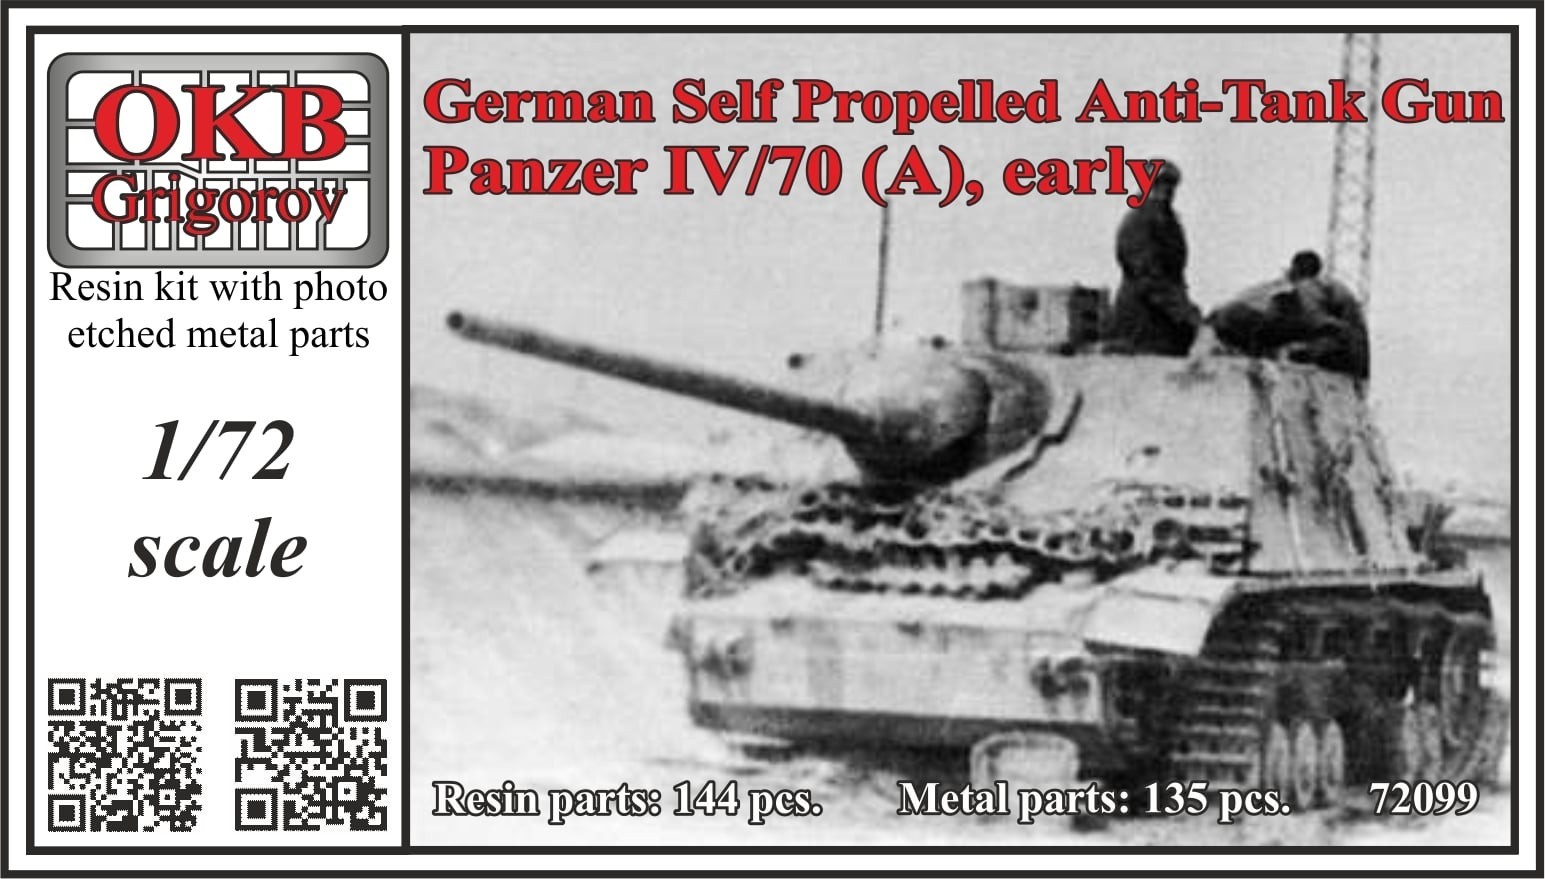 German Self Propelled Anti-Tank Gun Panzer IV/70 (A), Early